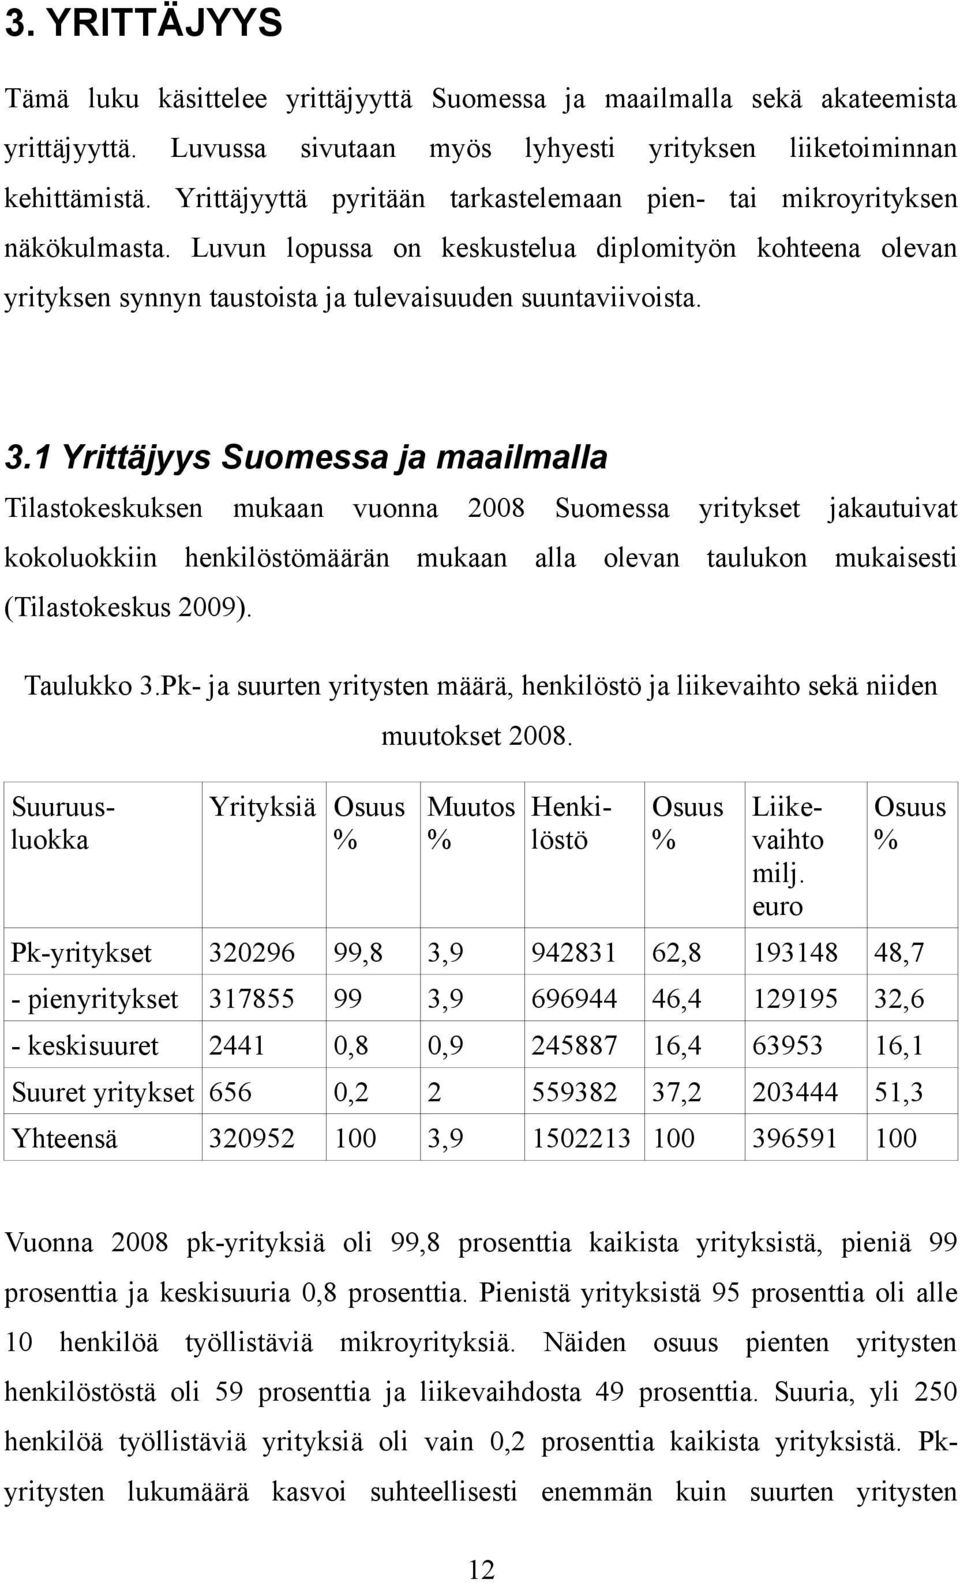 1 Yrittäjyys Suomessa ja maailmalla Tilastokeskuksen mukaan vuonna 2008 Suomessa yritykset jakautuivat kokoluokkiin henkilöstömäärän mukaan alla olevan taulukon mukaisesti (Tilastokeskus 2009).